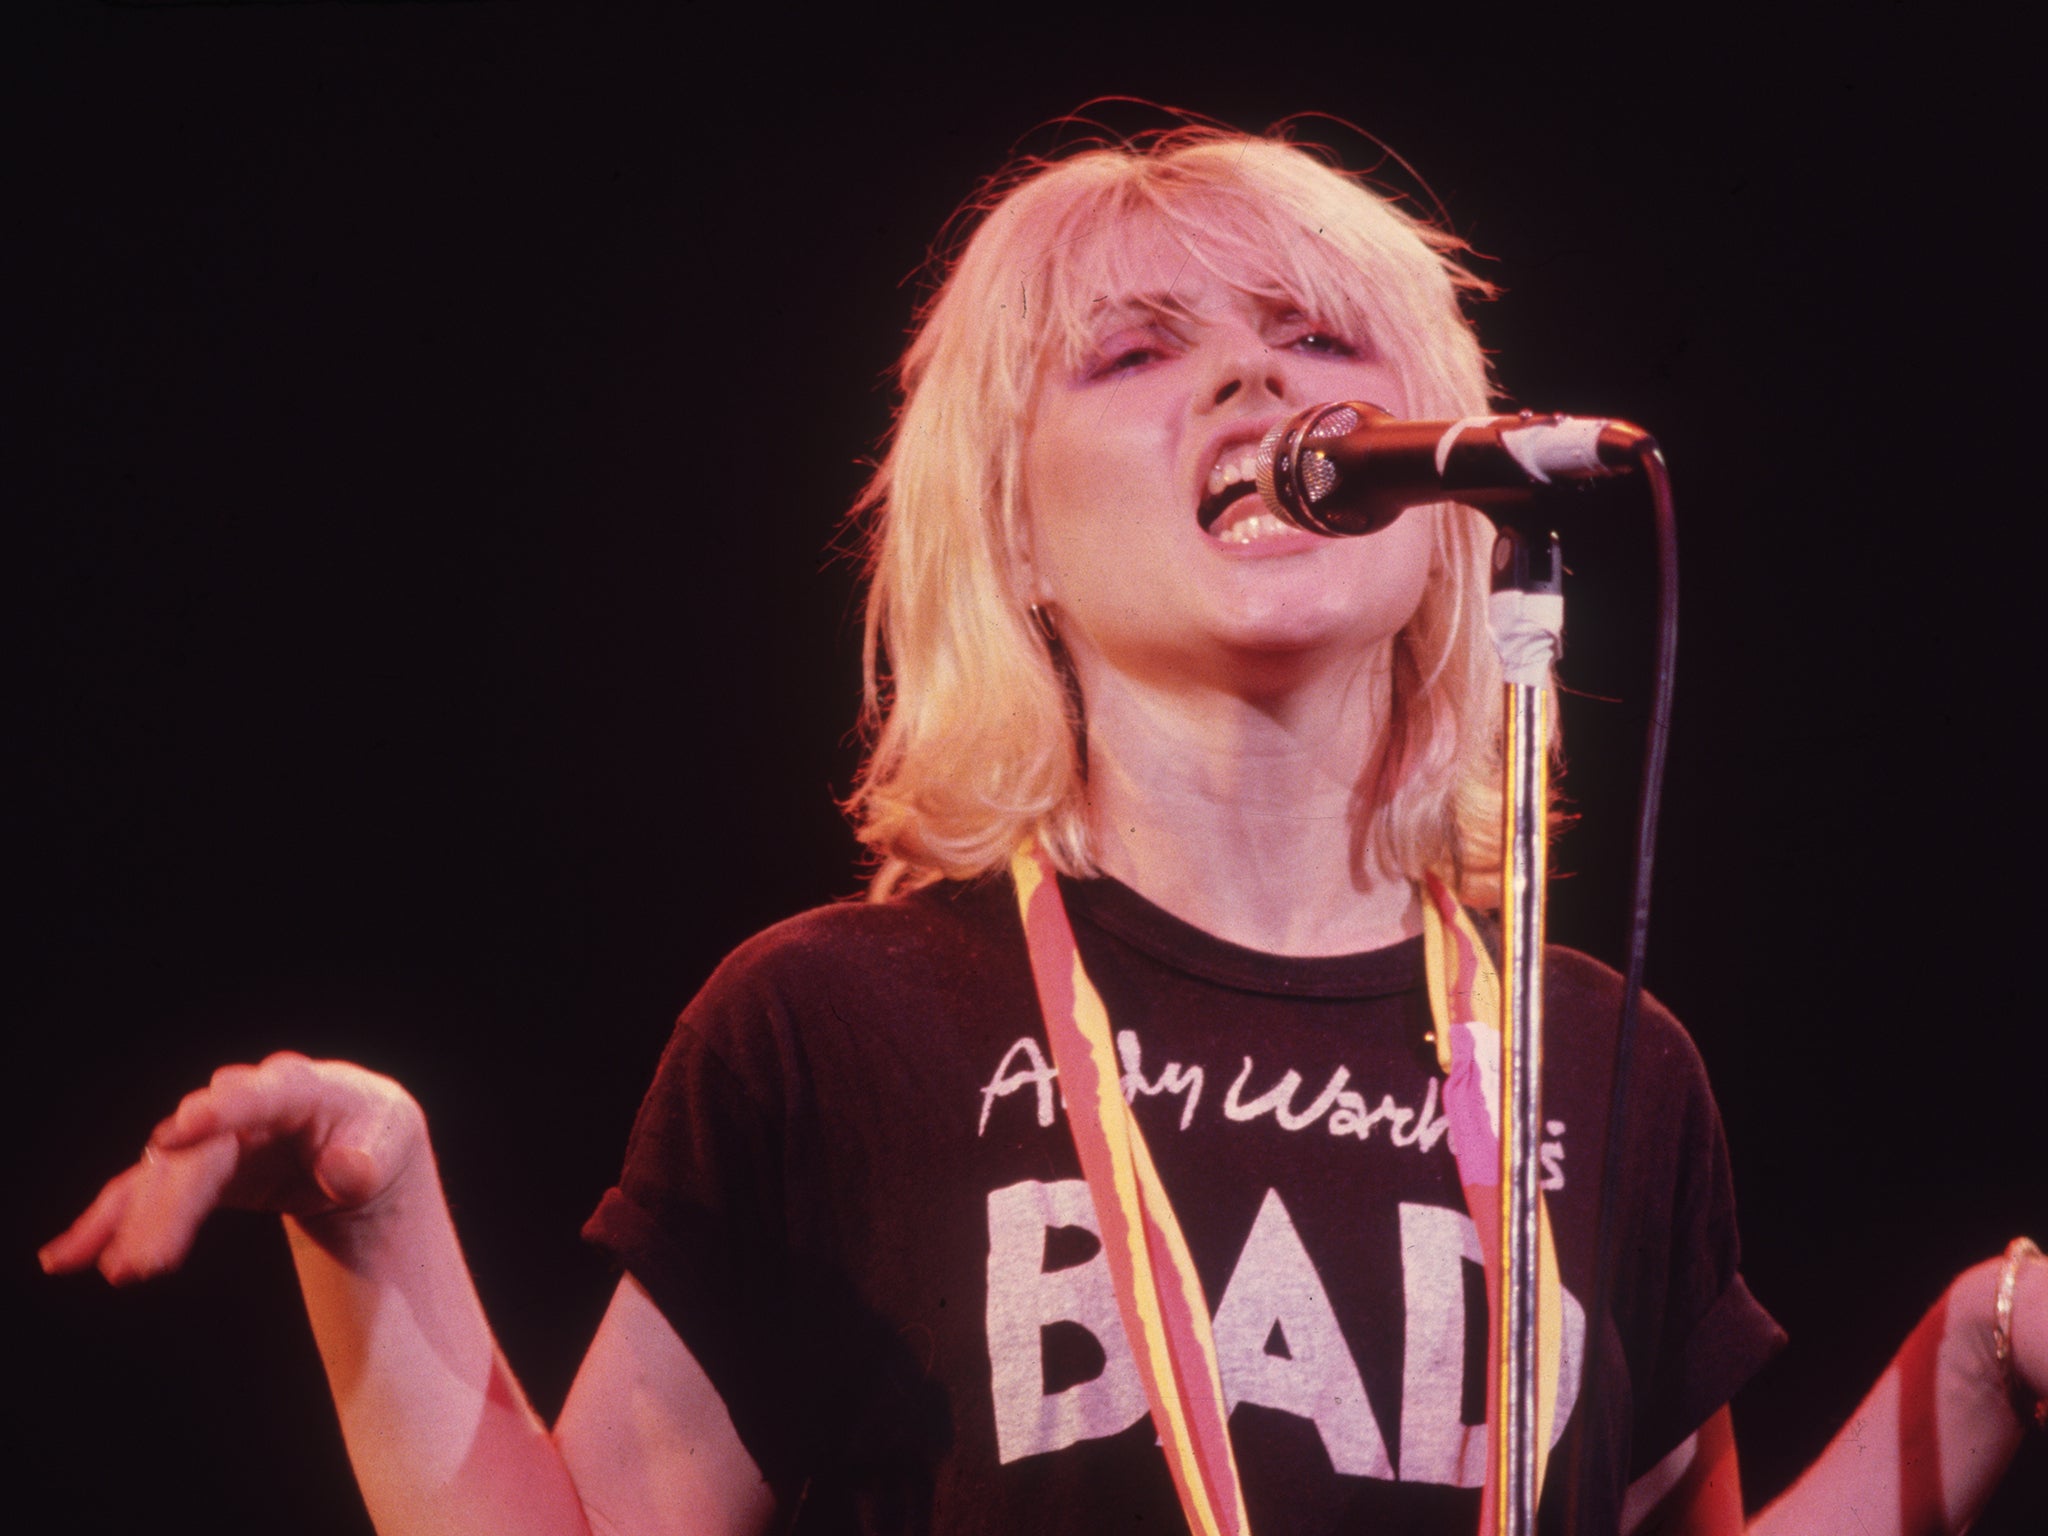 Debbie Harry, the lead singer of Blondie, performs in 1980